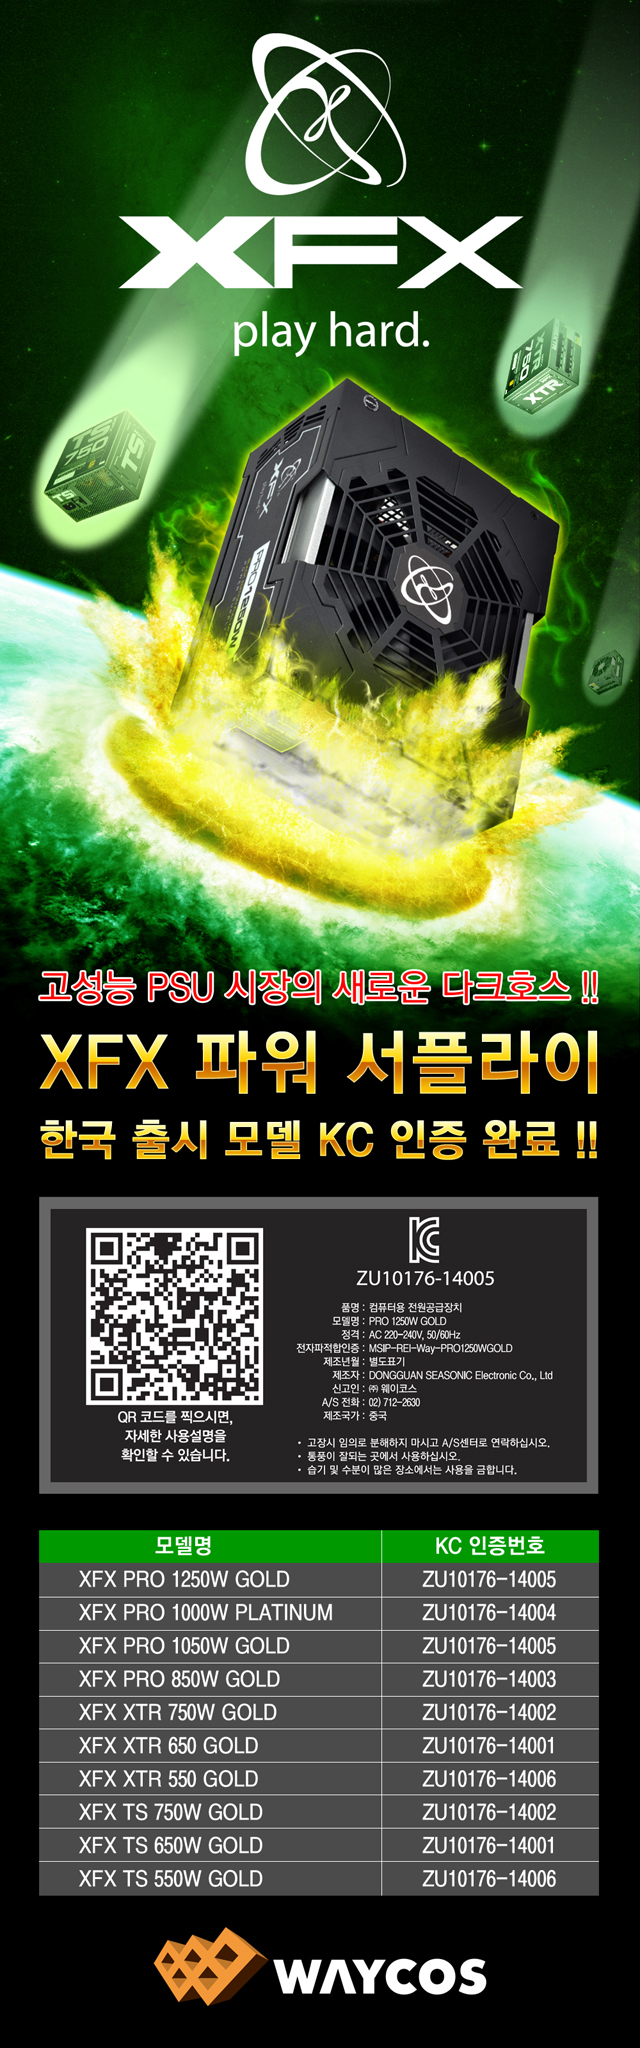 웨이코스, 고성능 XFX 브랜드 파워, 한국 출시 모델 KC 인증 완료